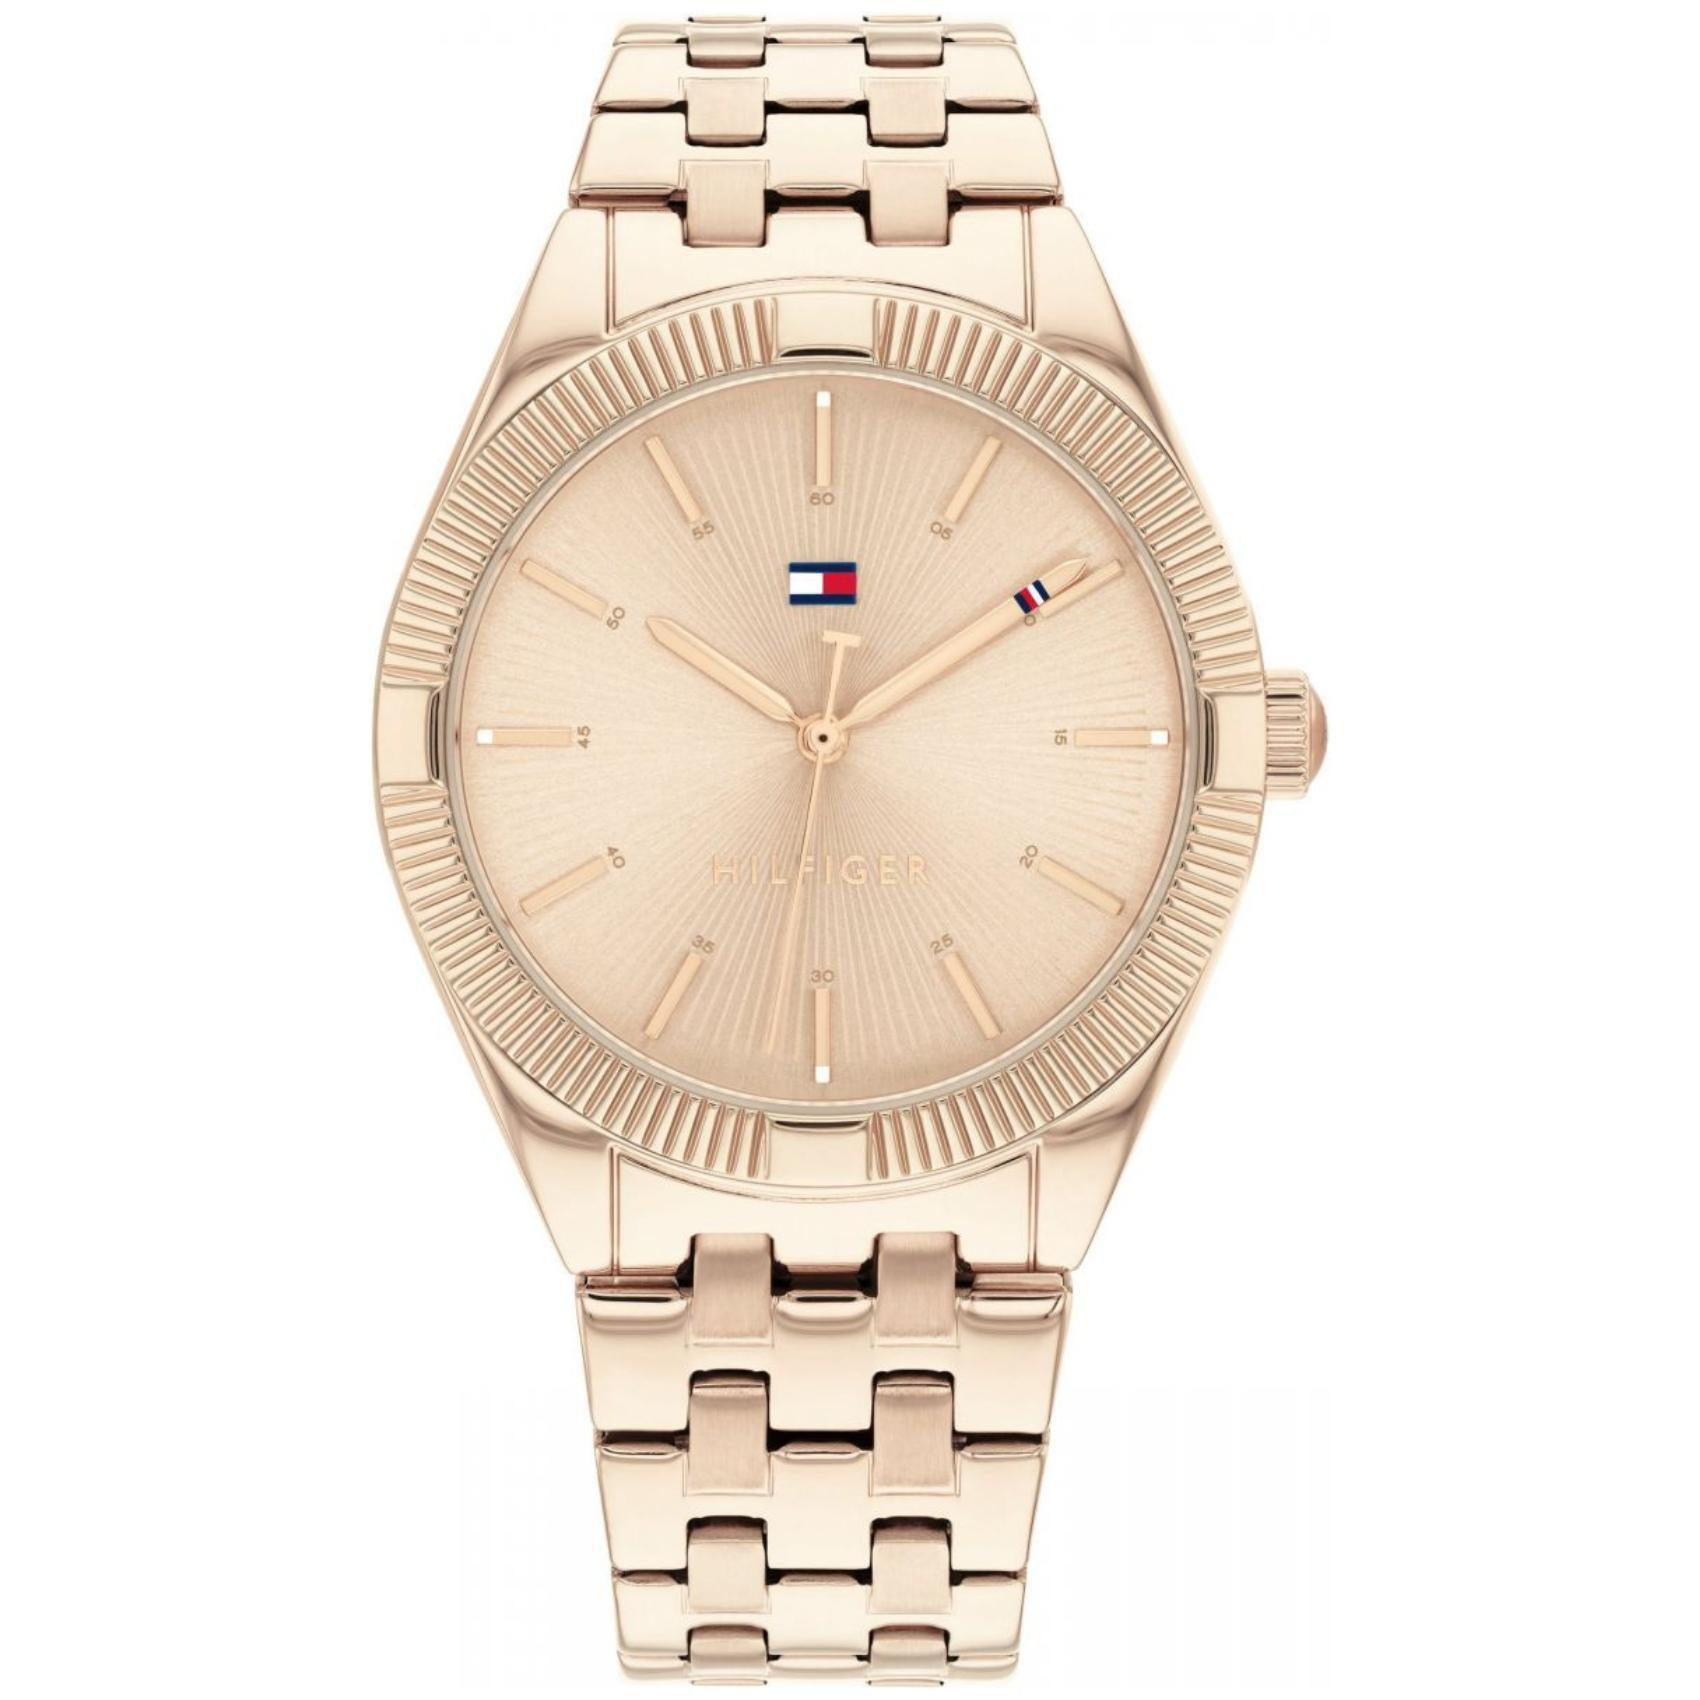 Γυναικείο ρολόι Tommy Hilfiger Rachel 1782551 με ροζ χρυσό ατσάλινο μπρασελέ και ροζ χρυσό καντράν διαμέτρου 33mm.